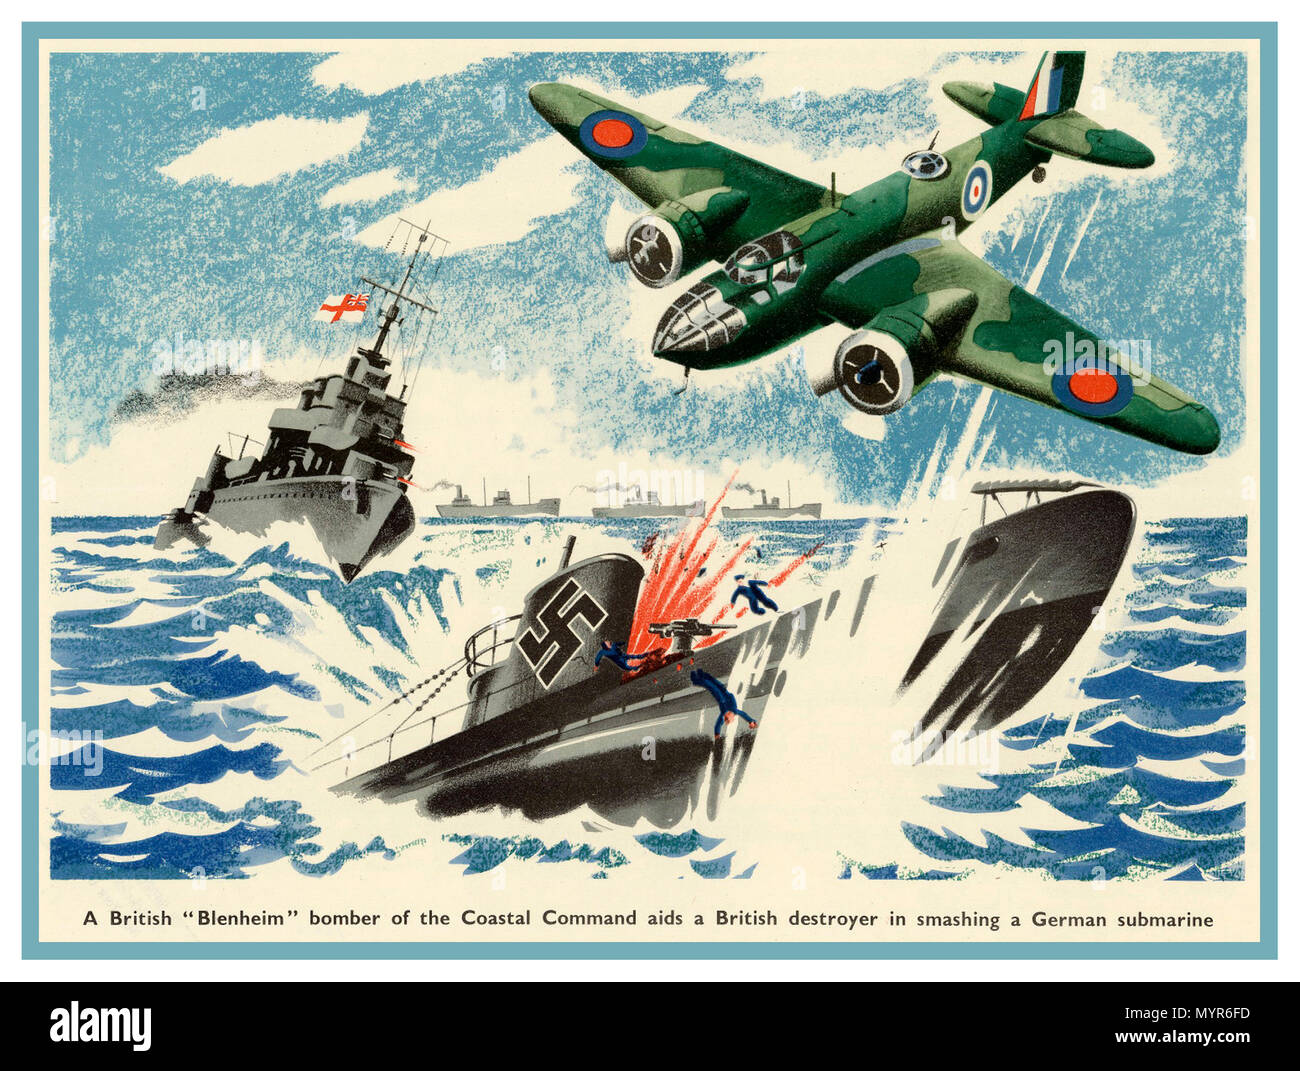 Ilustración de Propaganda Vintage 1942 un Británico "Blenheim bombardero' del comando costero sida un destructor británico en aplastar a un submarino alemán Foto de stock